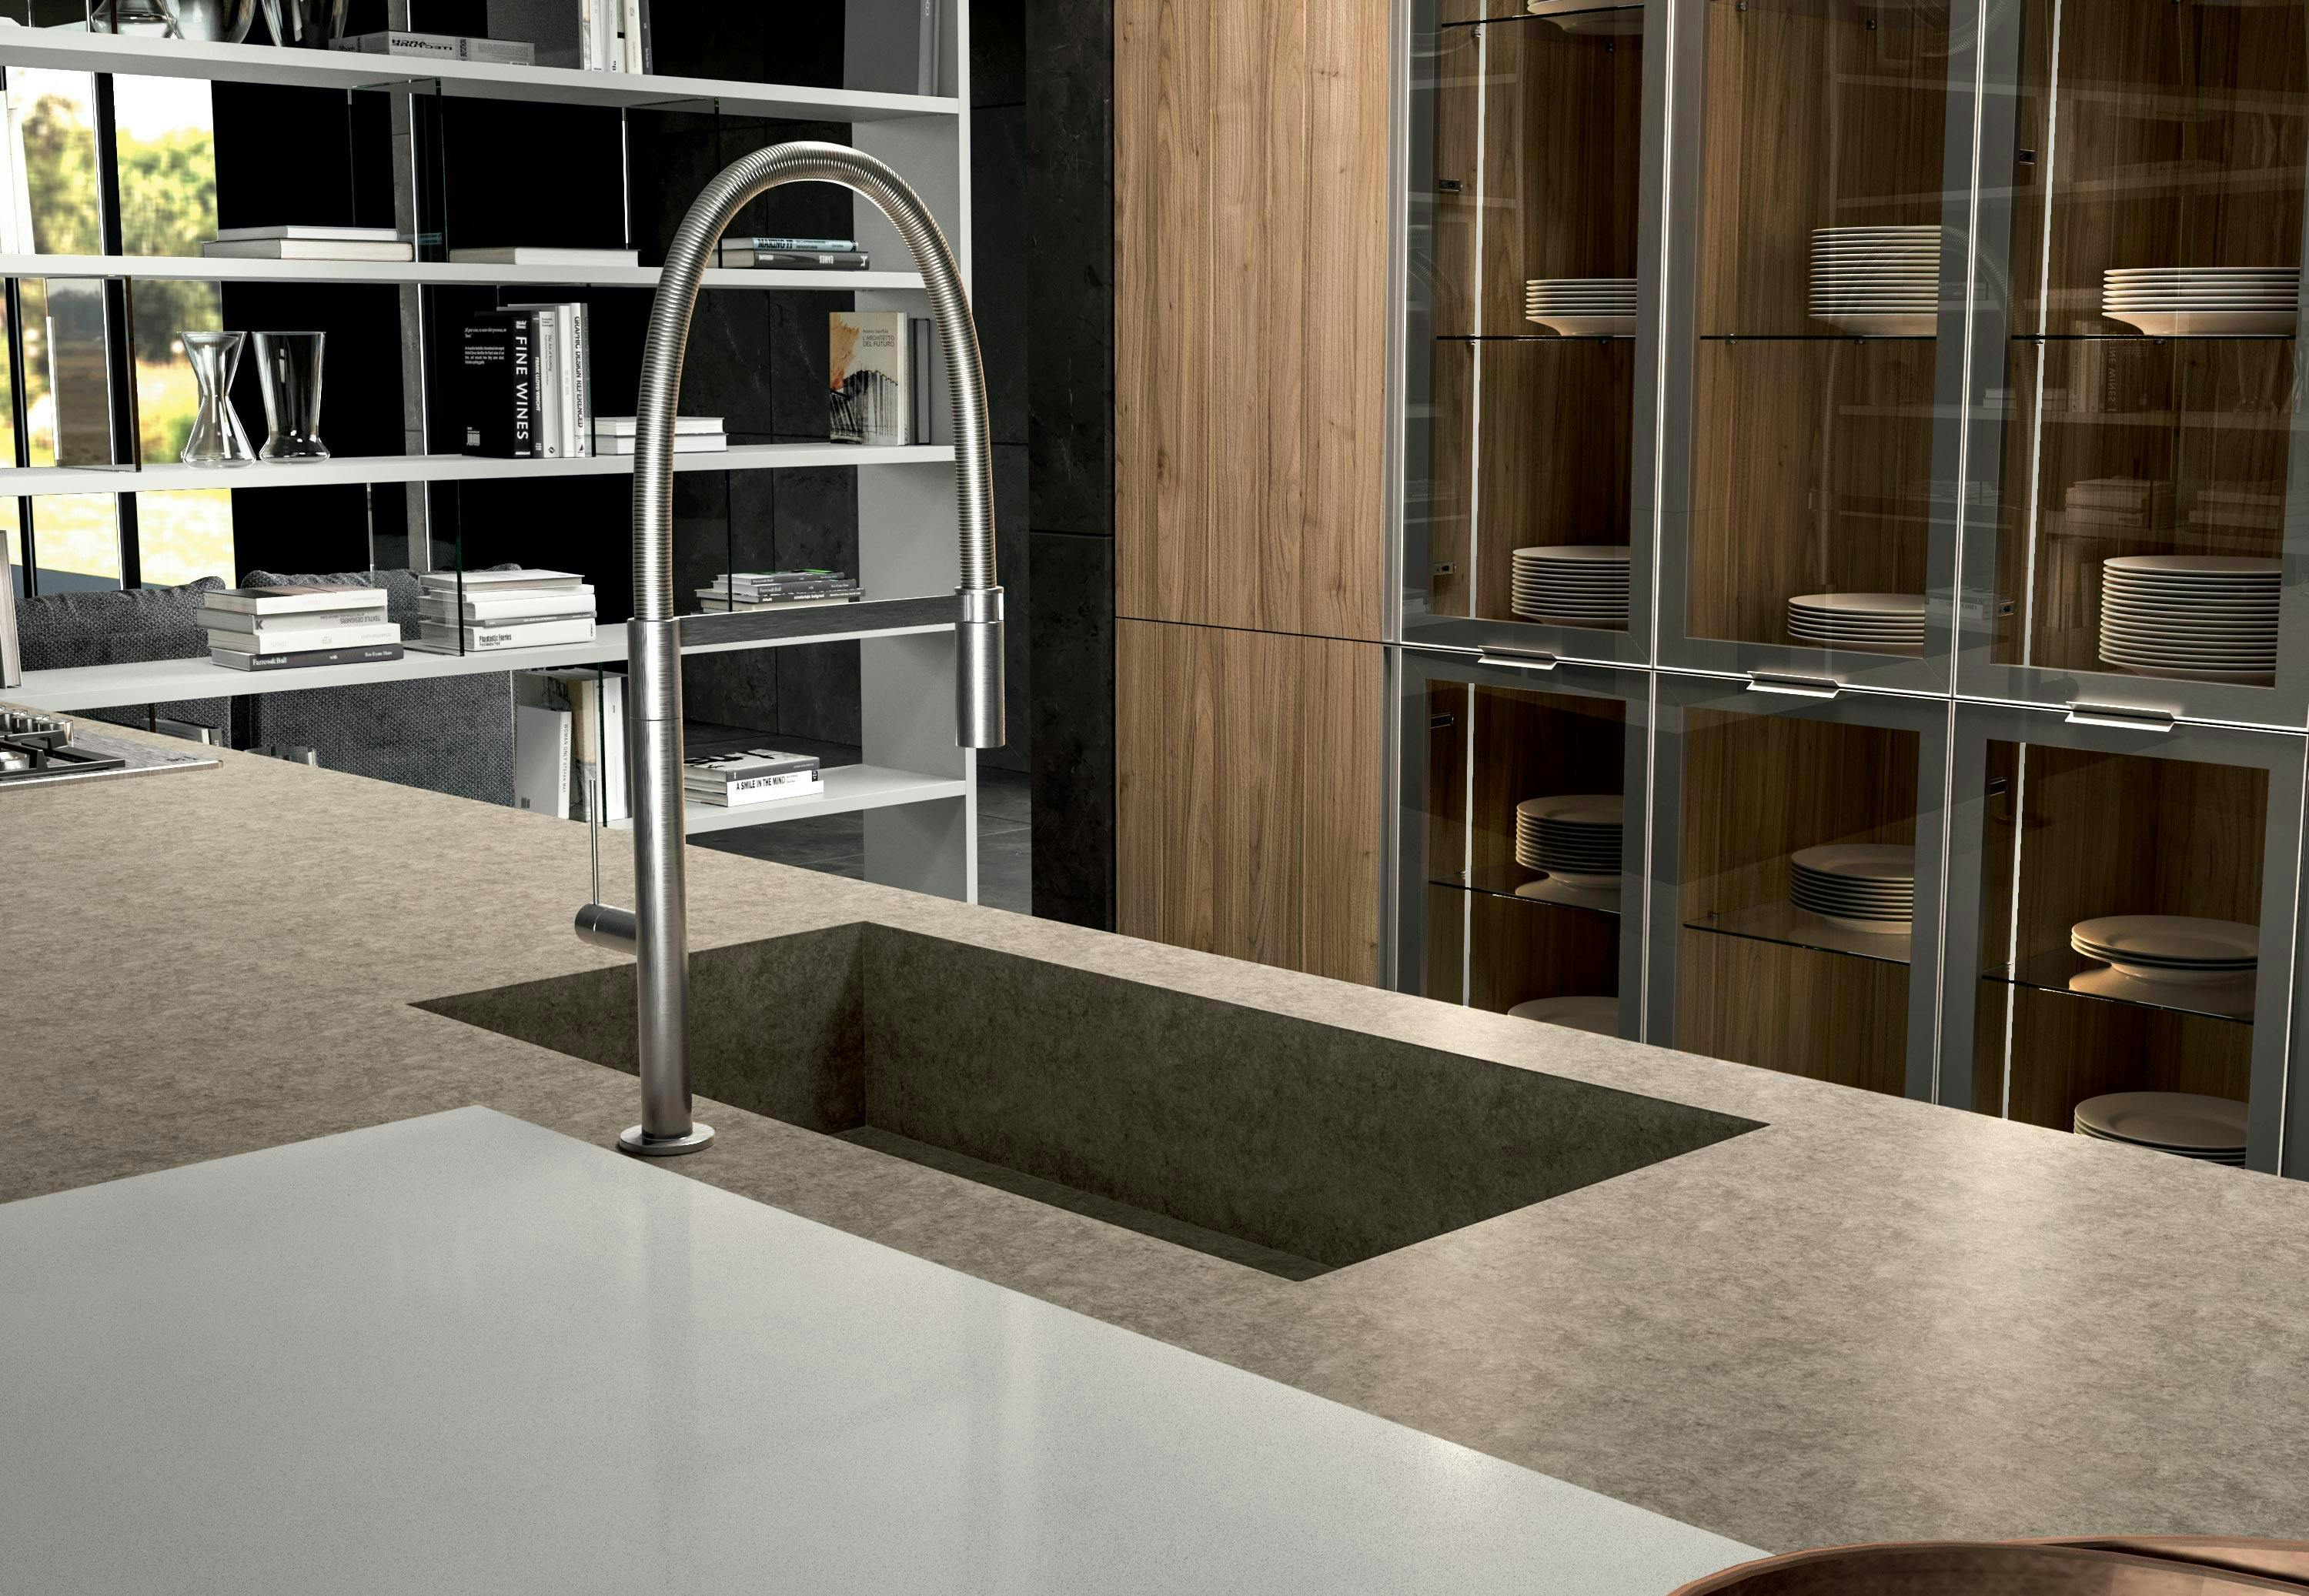 Aria, Febal Casa kitchens, Mona™ Design Studio